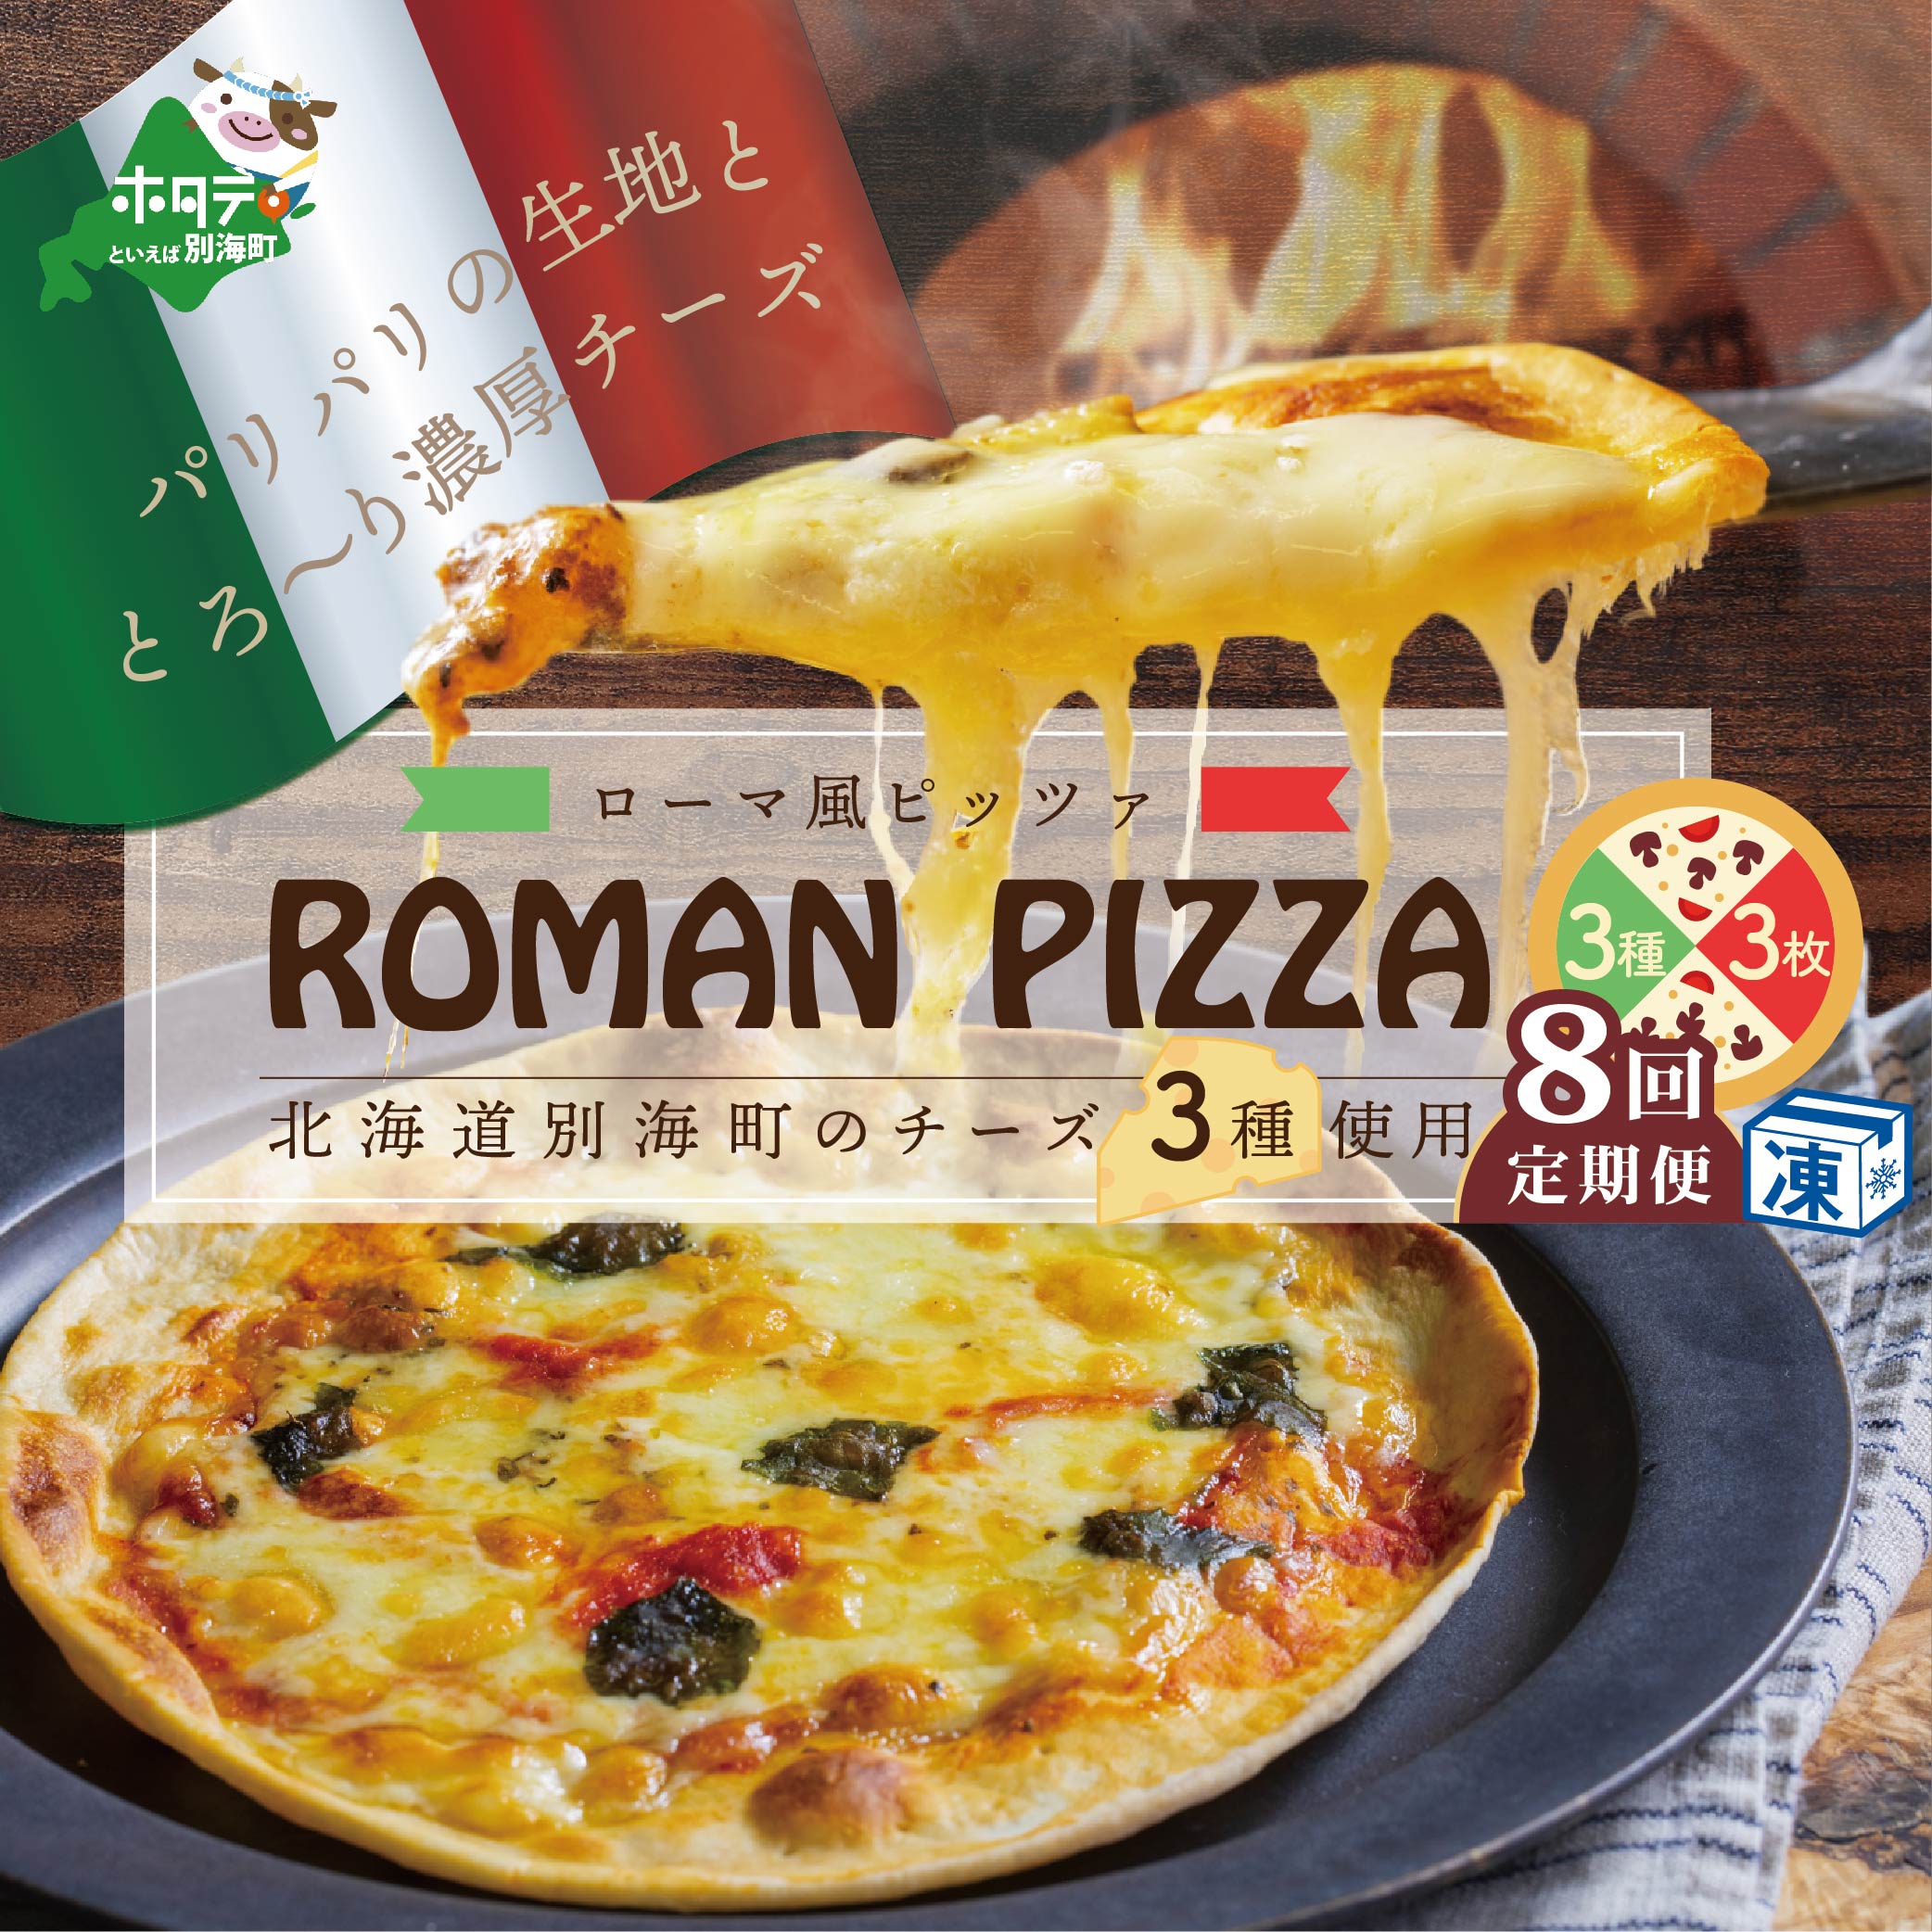 北海道別海町チーズを使ったピザ ３枚セット×８ヵ月(be059-0689-100-8)